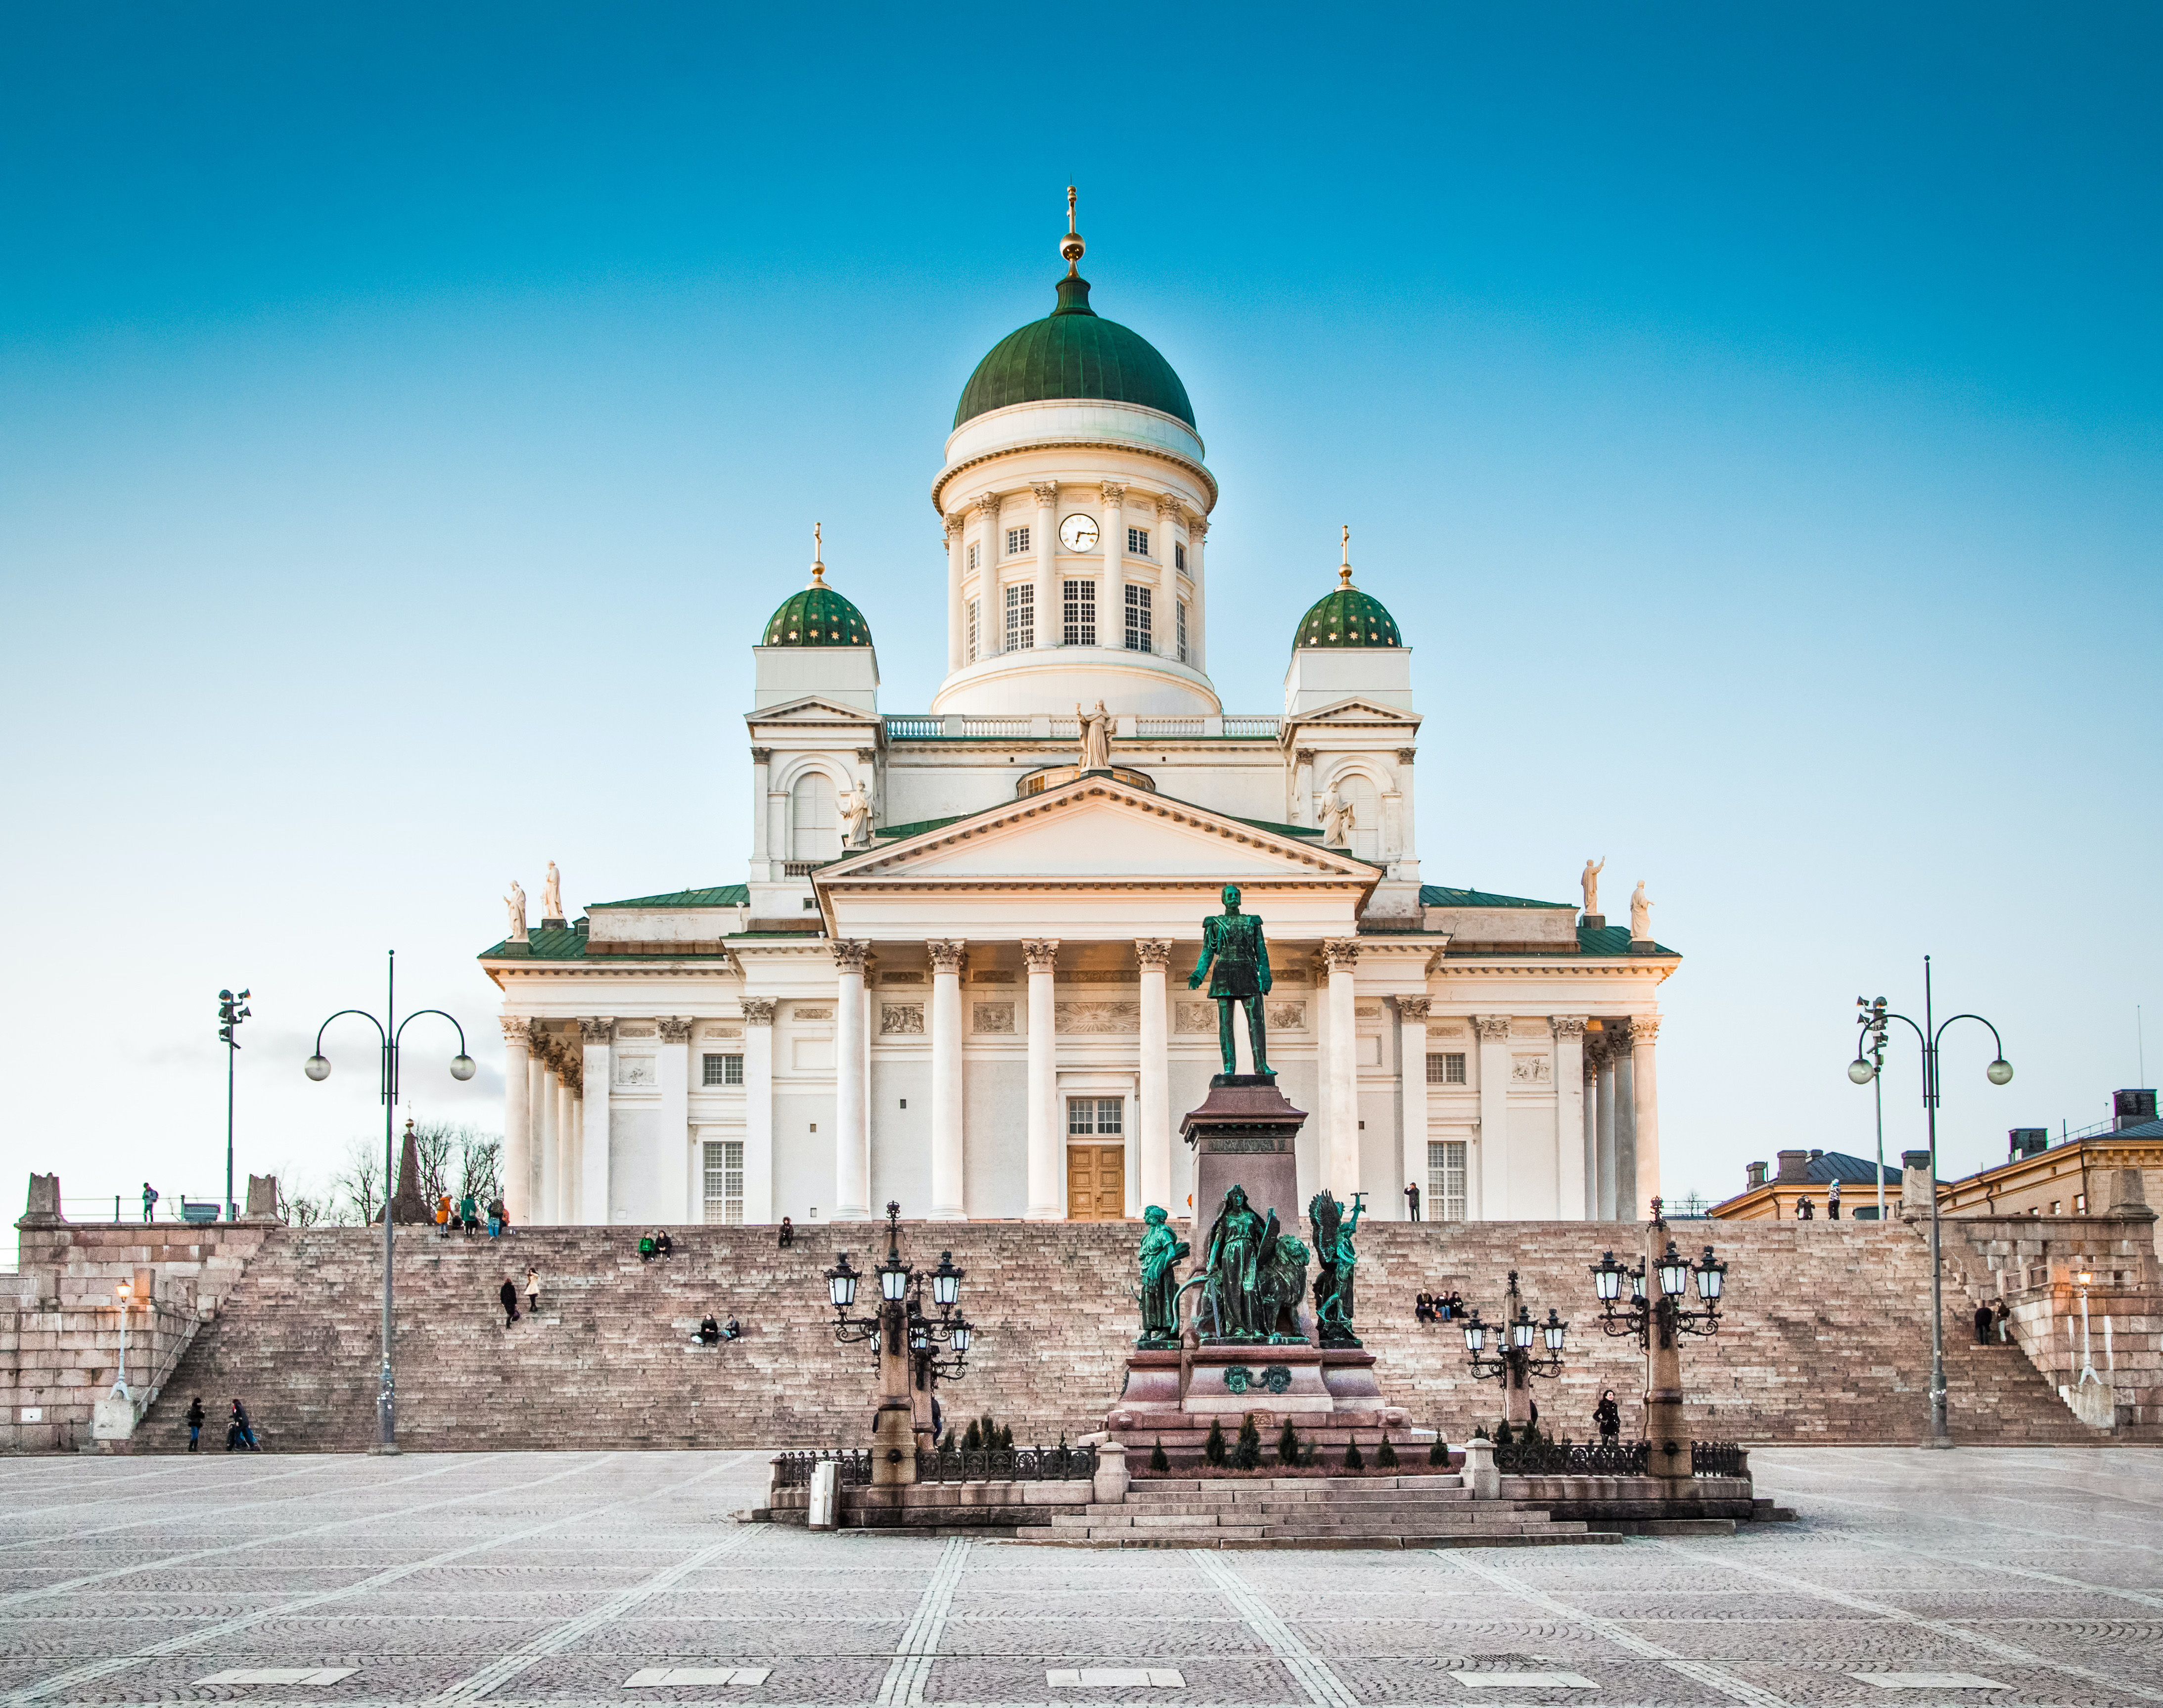 Dom von Helsinki © JFL Photography